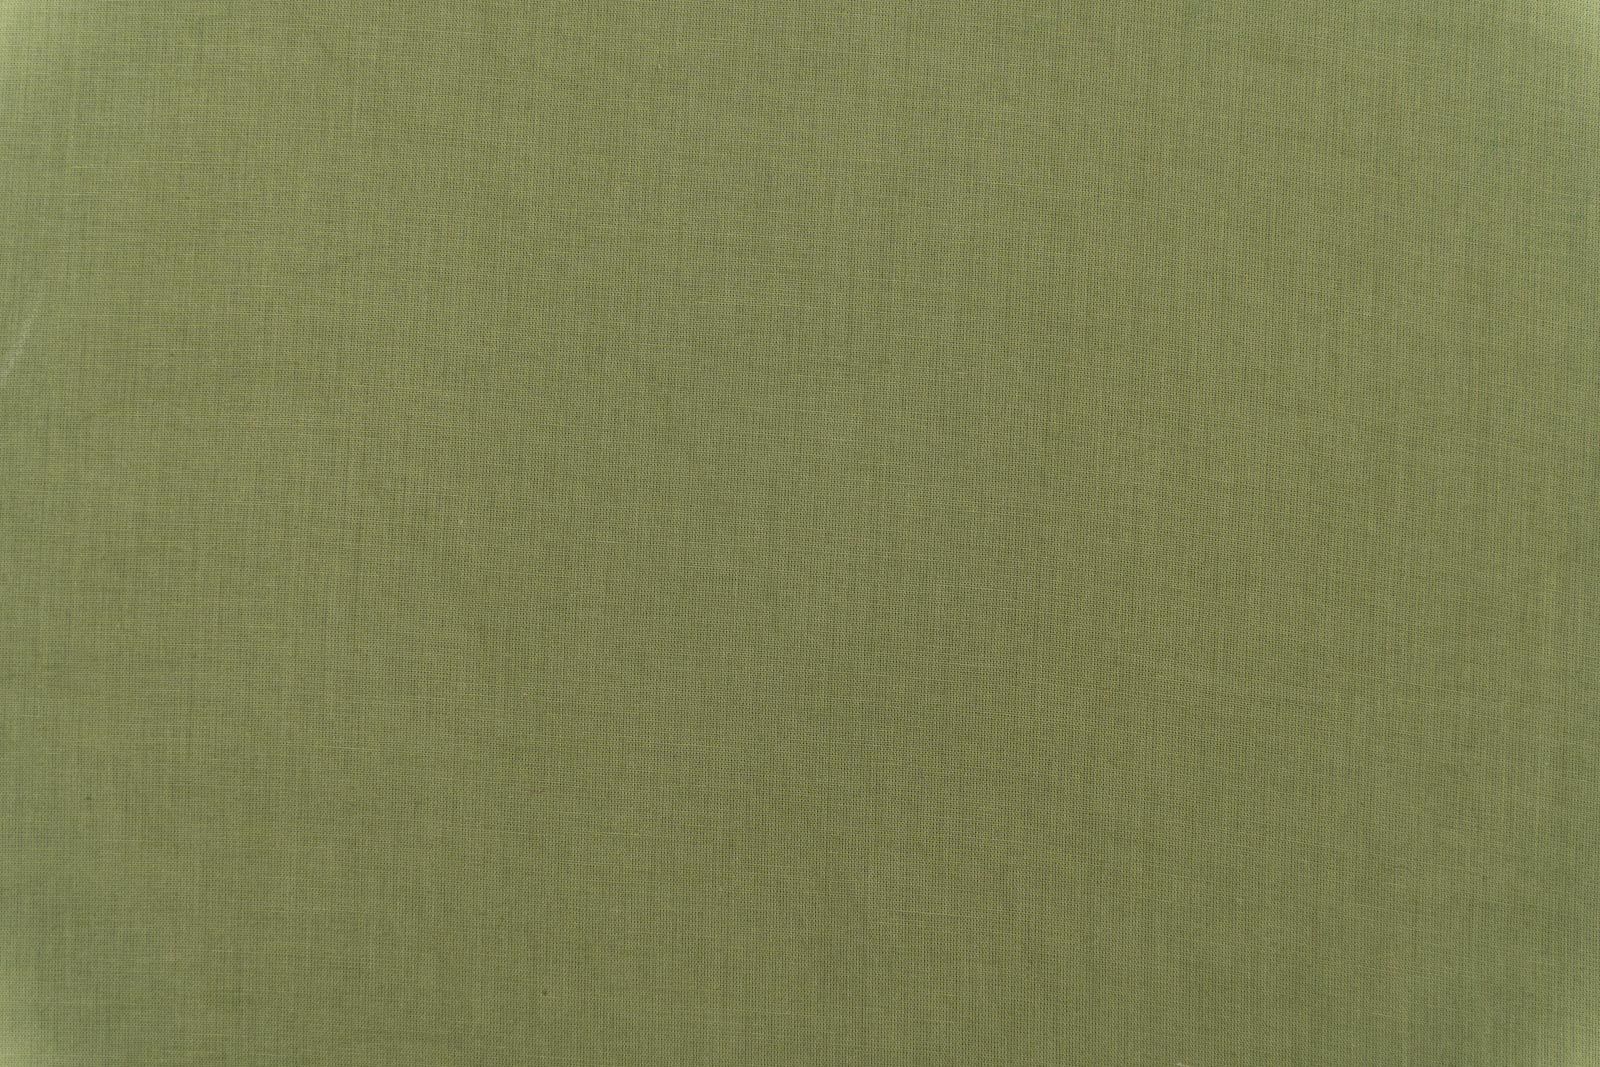 Tendril Green Mulmul Cotton Fabric